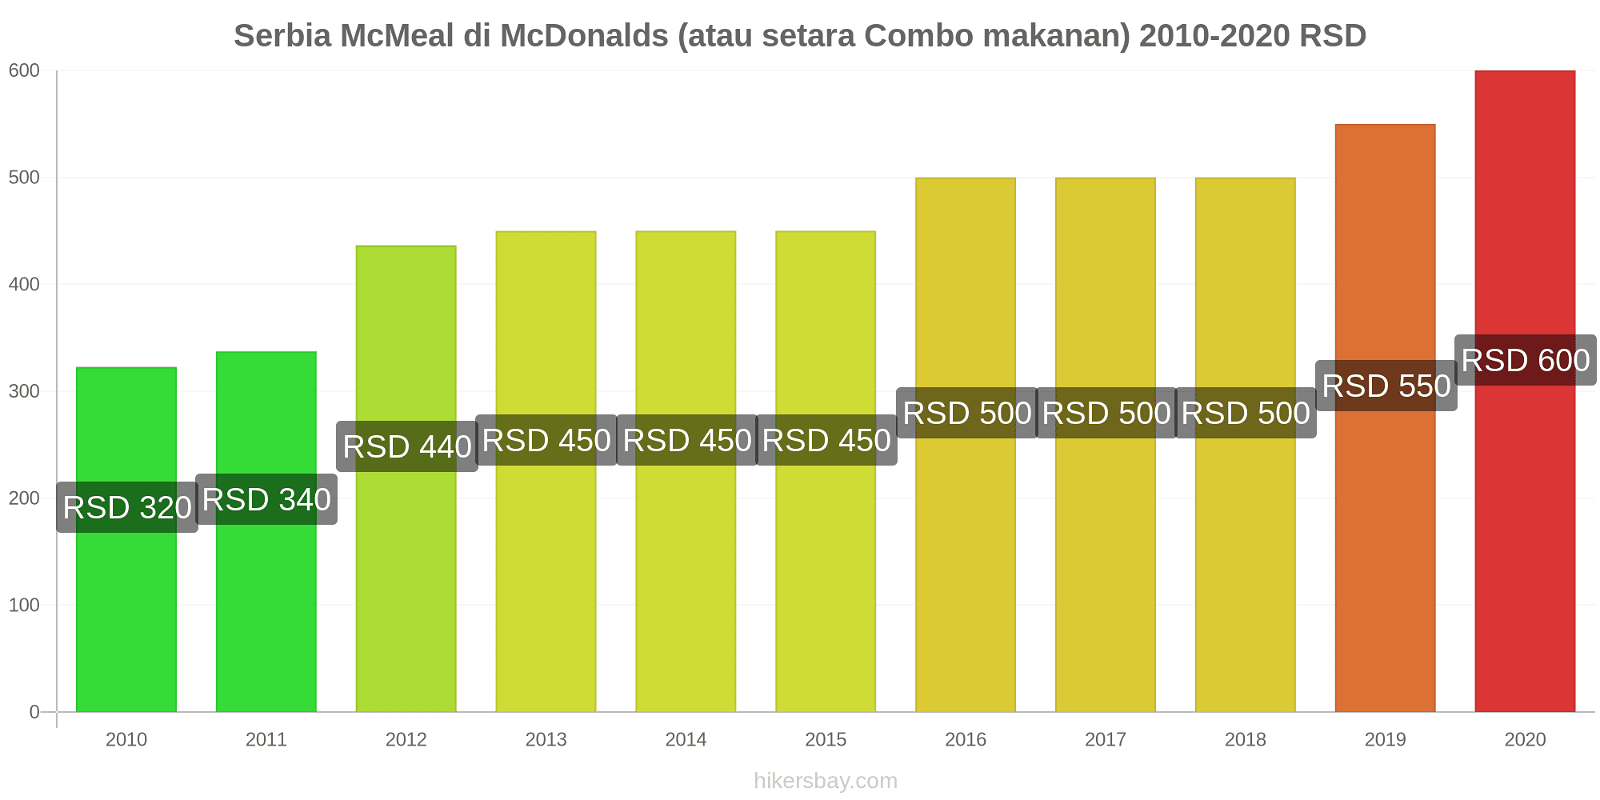 Serbia perubahan harga McMeal di McDonalds (atau setara Combo makanan) hikersbay.com